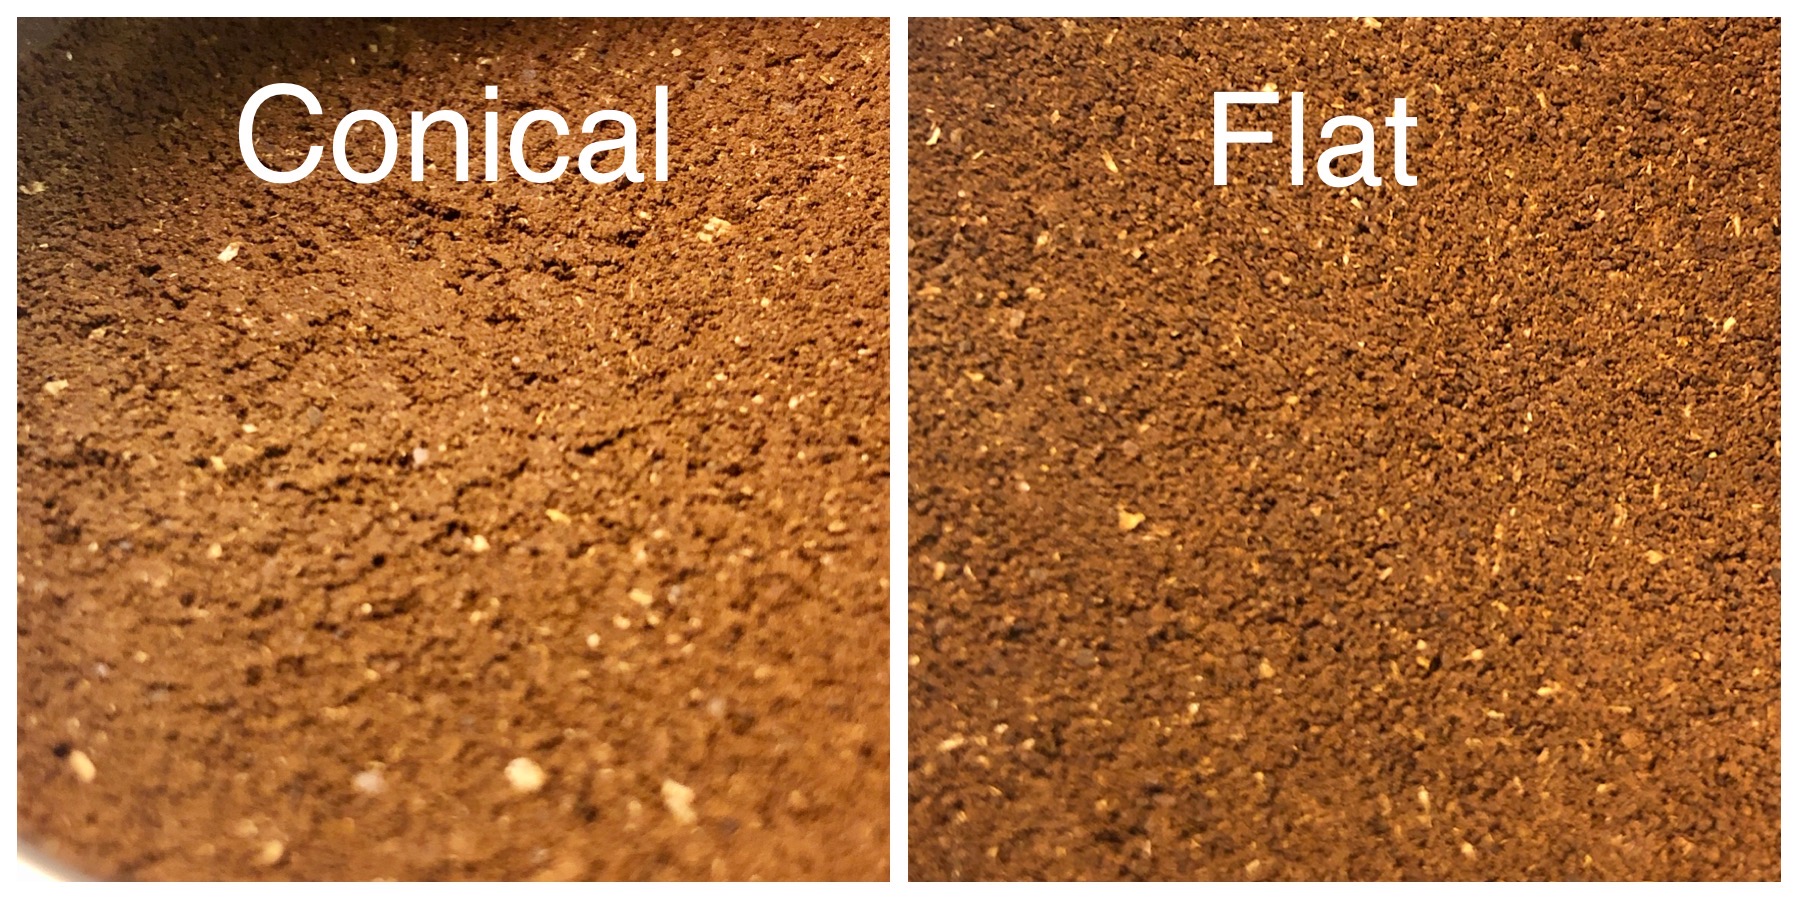 Conical burrs vs. flat burrs